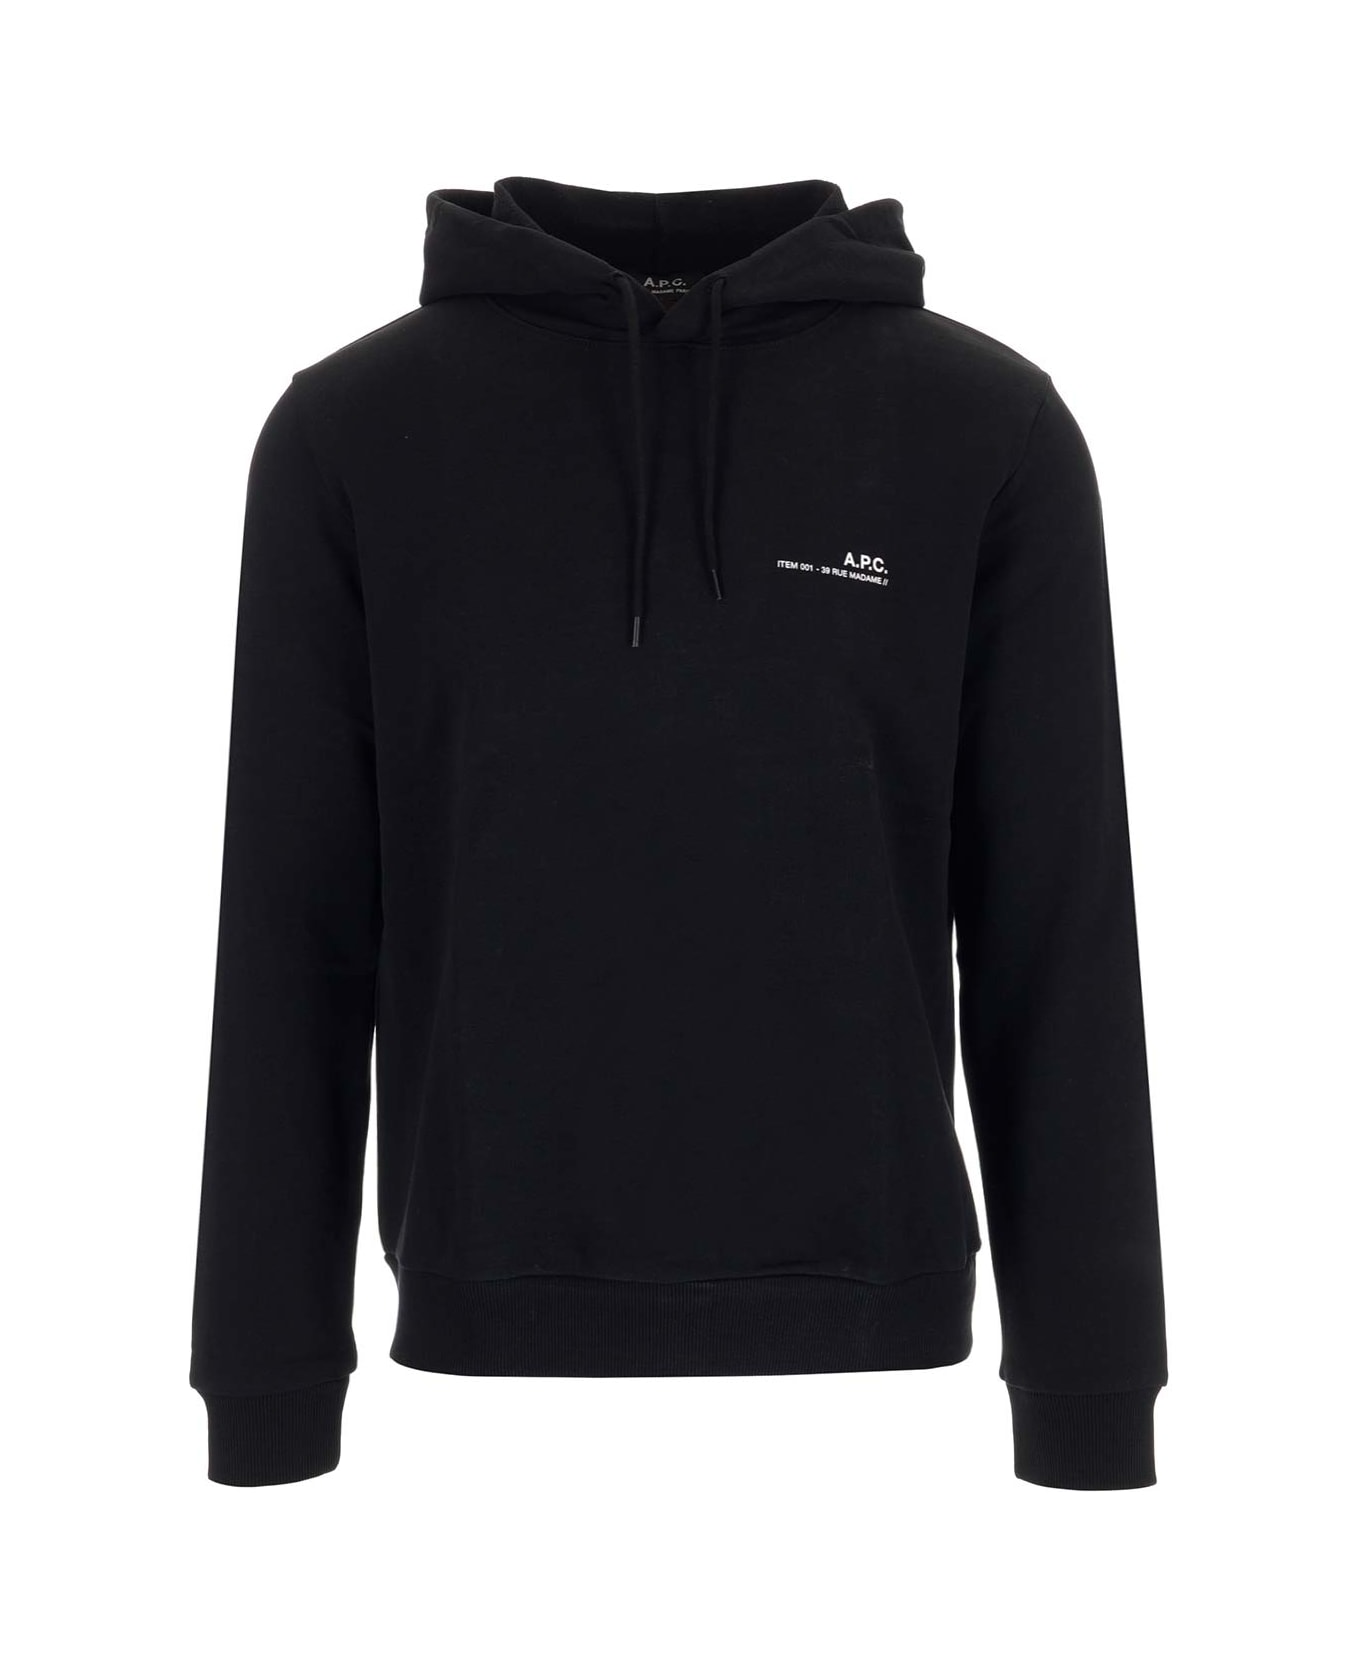 A.P.C. Hoodie Sweatshirt "item" In Cotton - Black